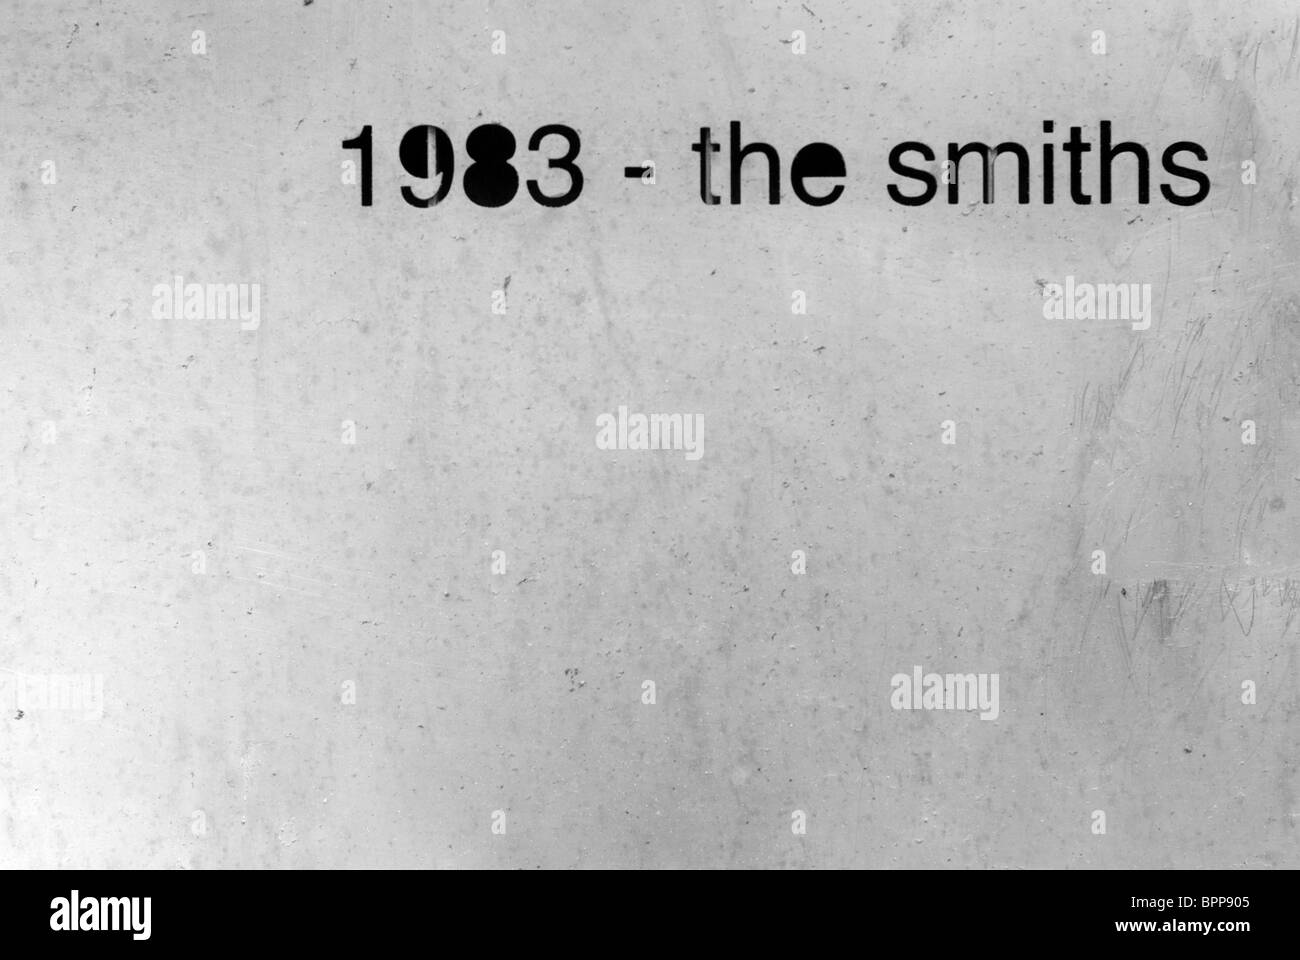 1983 - the smiths Stock Photo